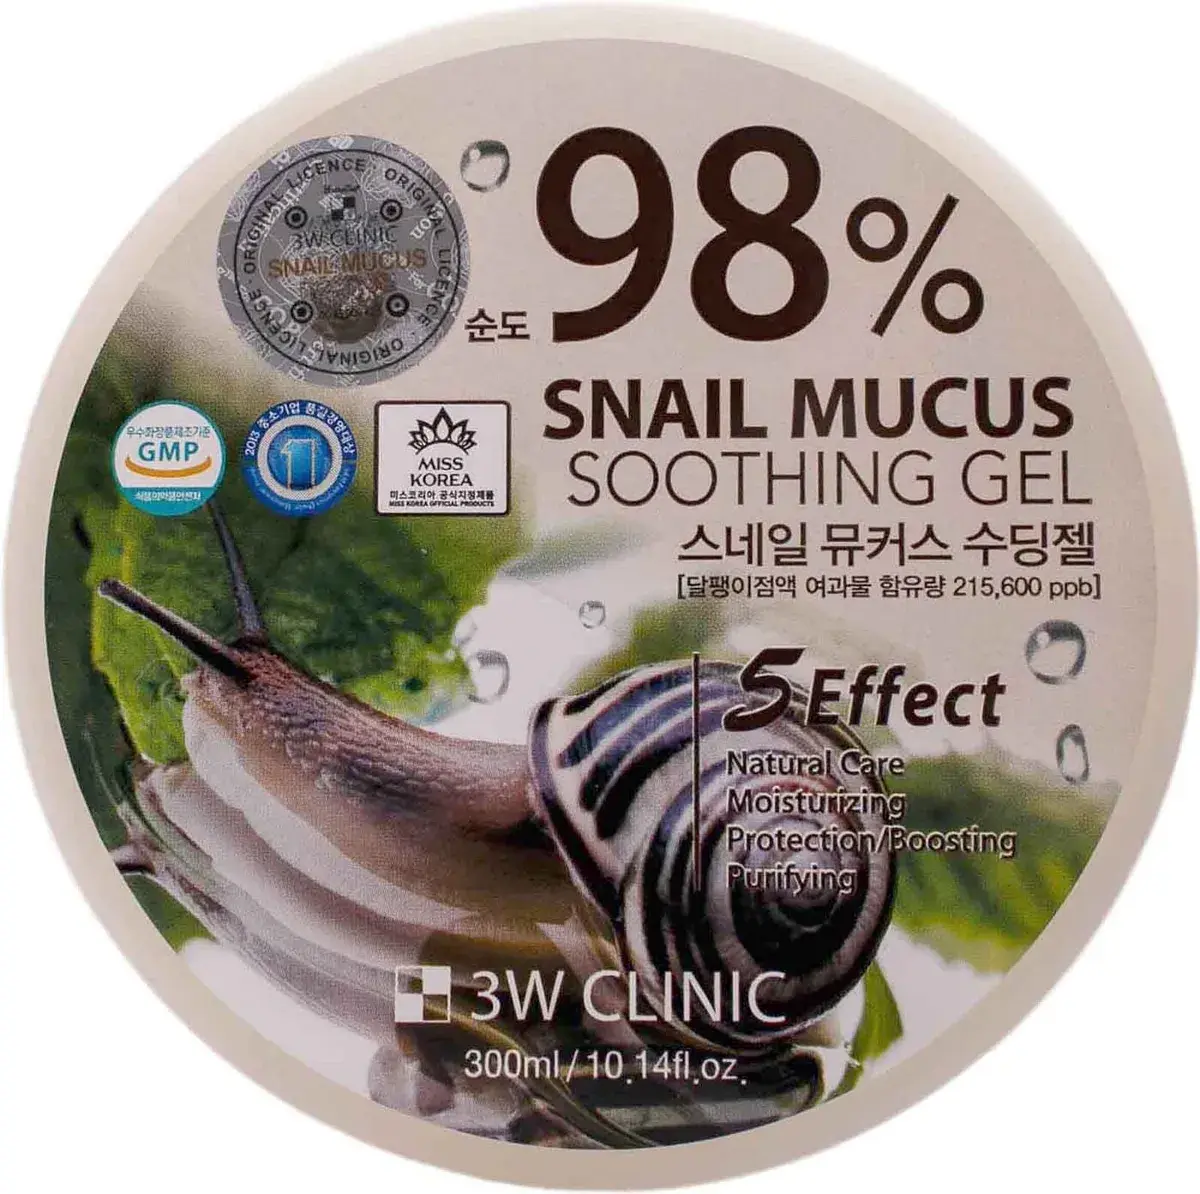 3W Clinic Soothing Gel 98% Snail Mucus Увлажняющий гель универсальный с Муцином улитки 300 мл